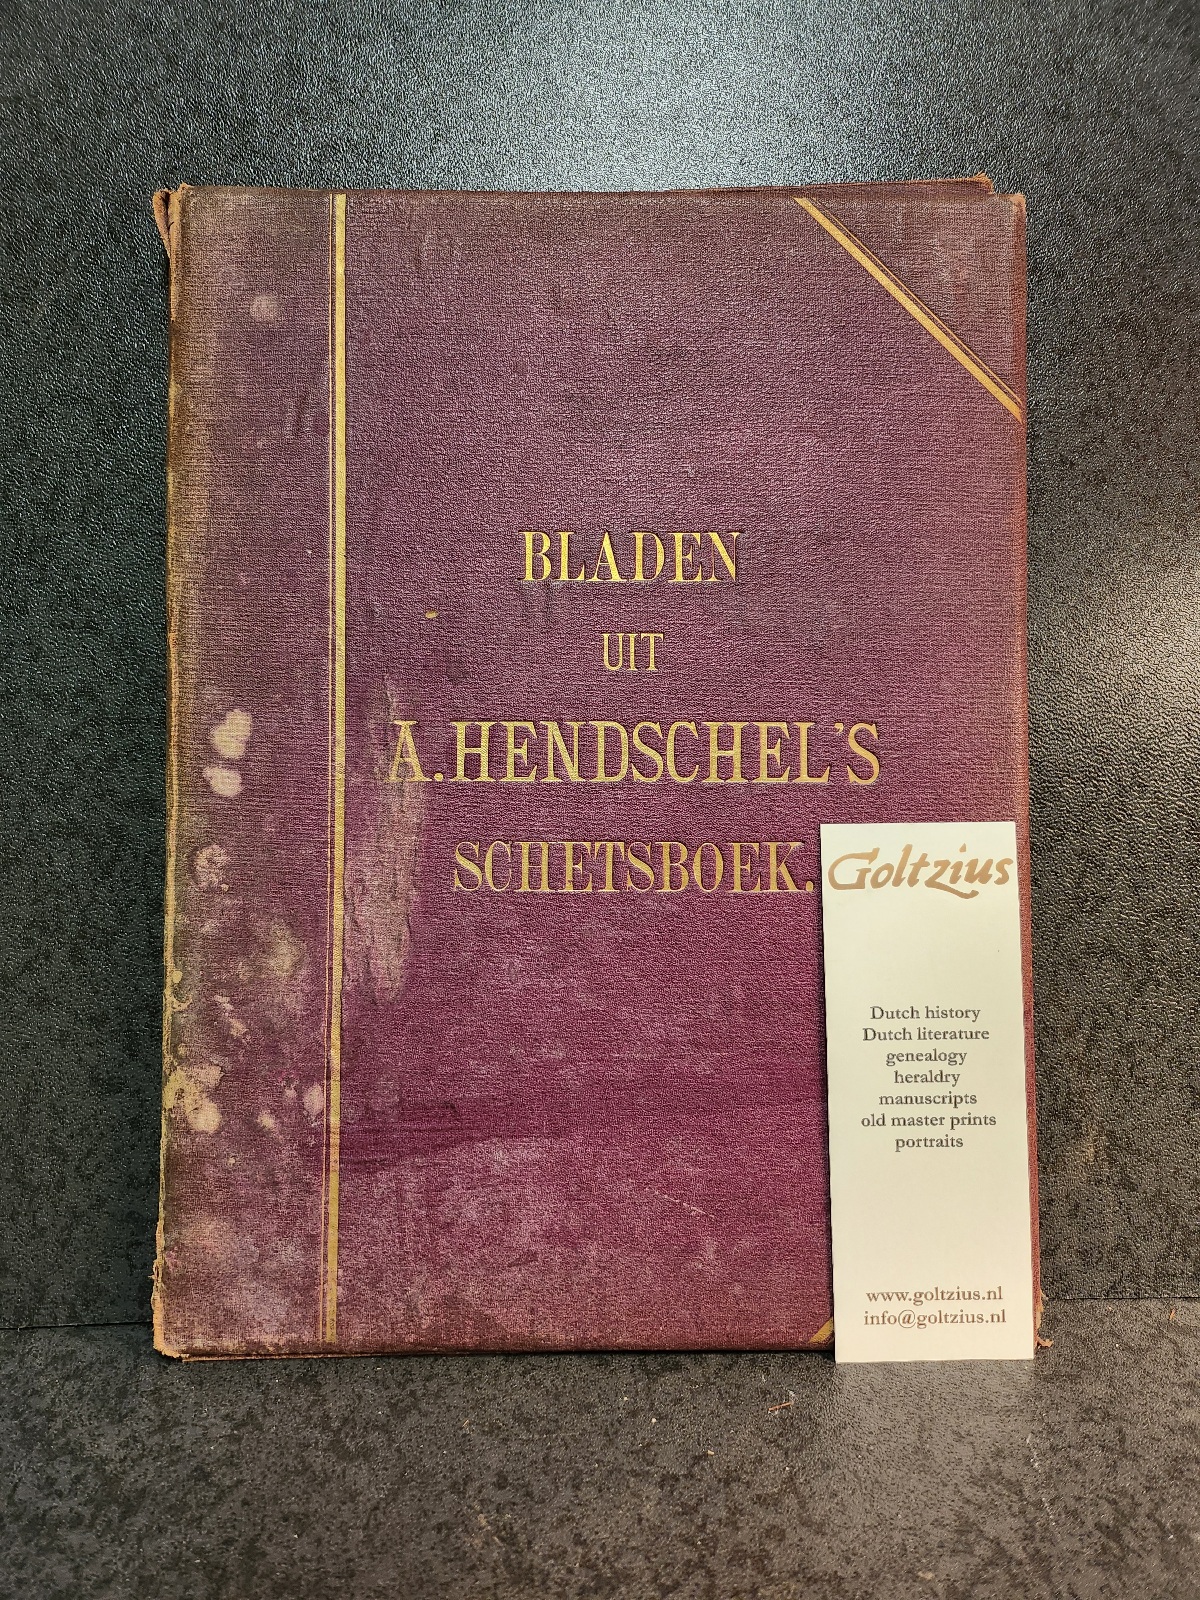 Hendschel, Albert Bladen uit A. Hendschel's schetsboek. Utrecht, W.F. Dannenfelser, (ca. 1890).